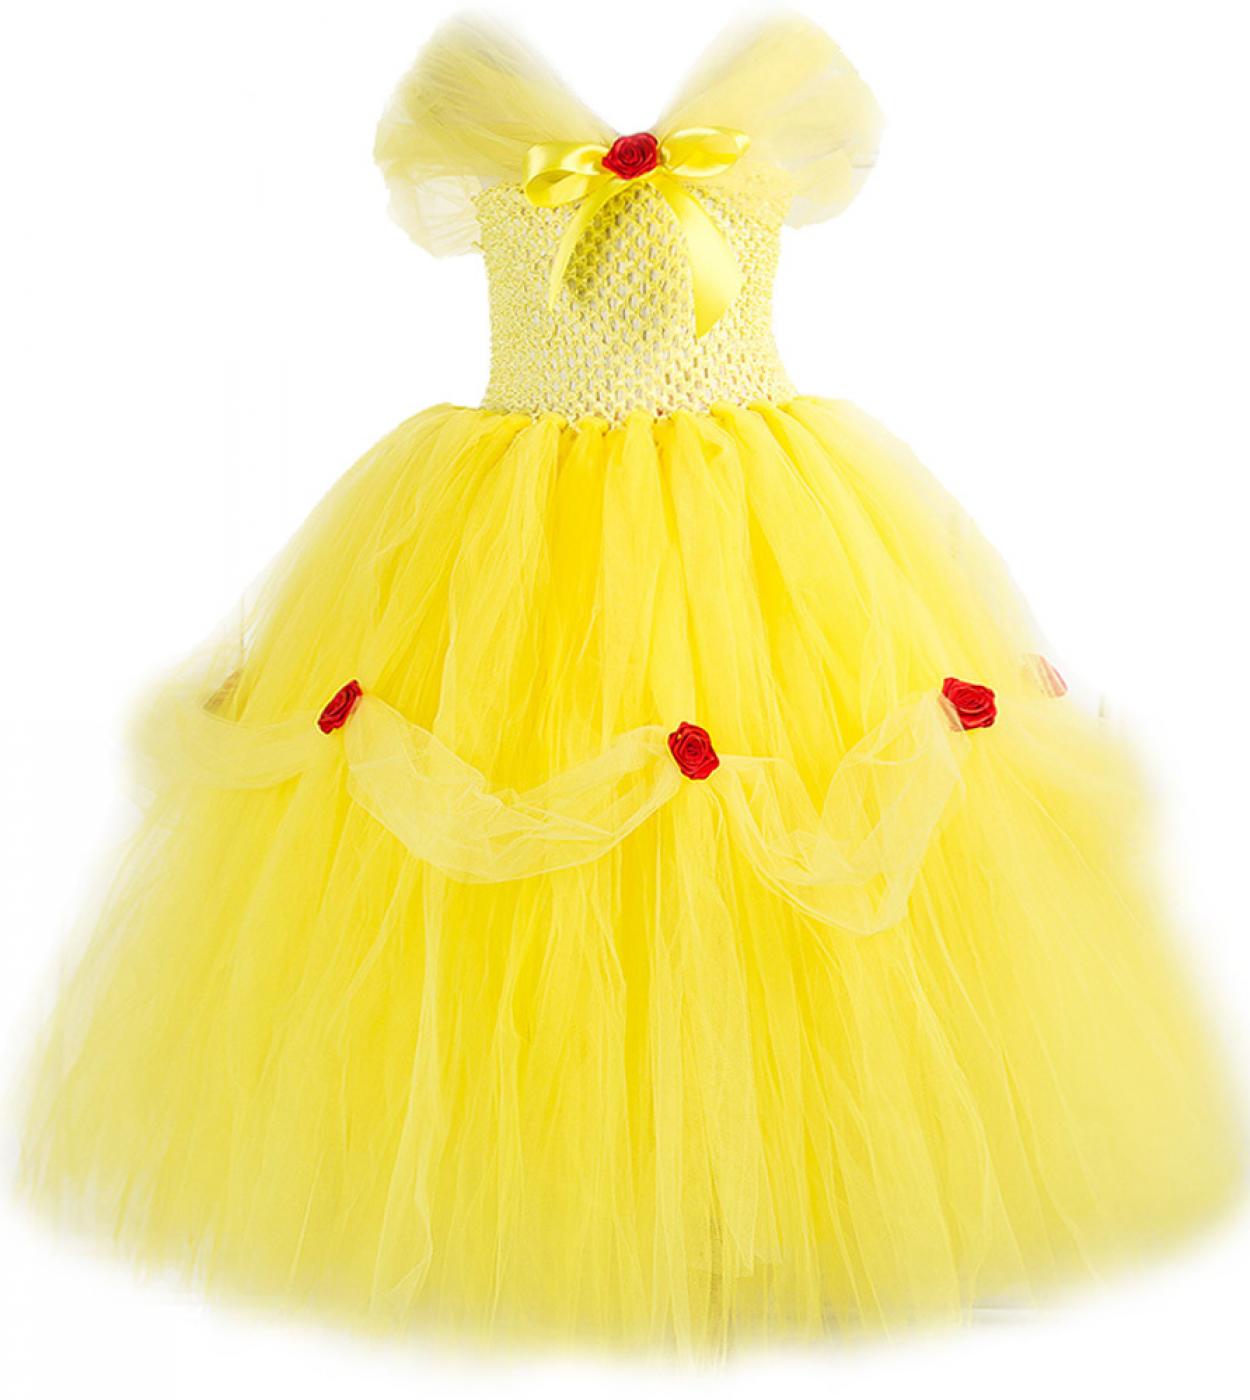 Beauty Belle Princess Costume للفتيات فساتين فاخرة ذات أرضية طويلة لأعياد الميلاد والهالوين أزياء للأطفال من التول Yell